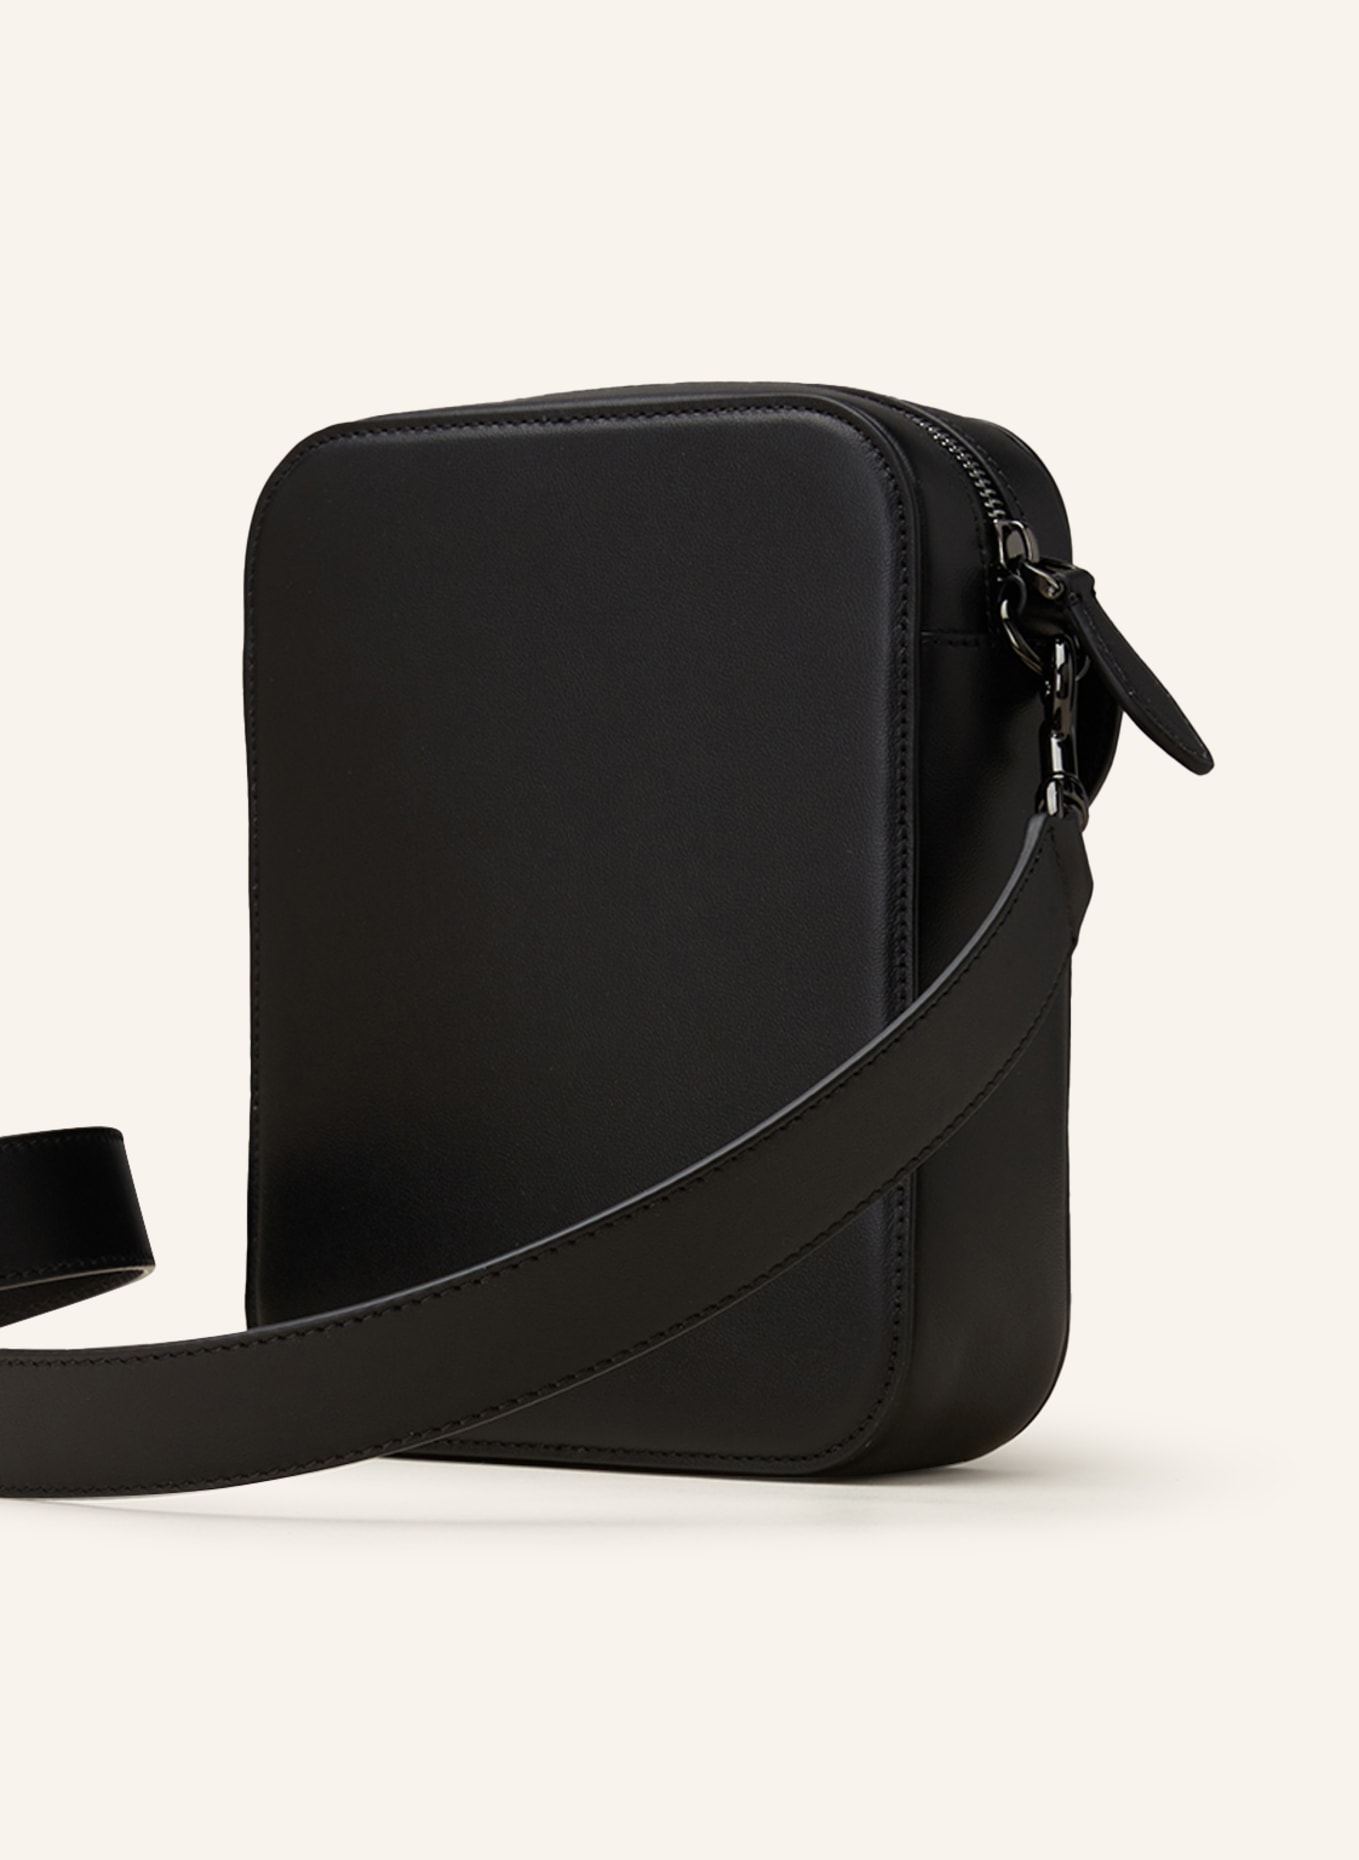 Loco Small Leather Crossbody Bag in Black - Valentino Garavani